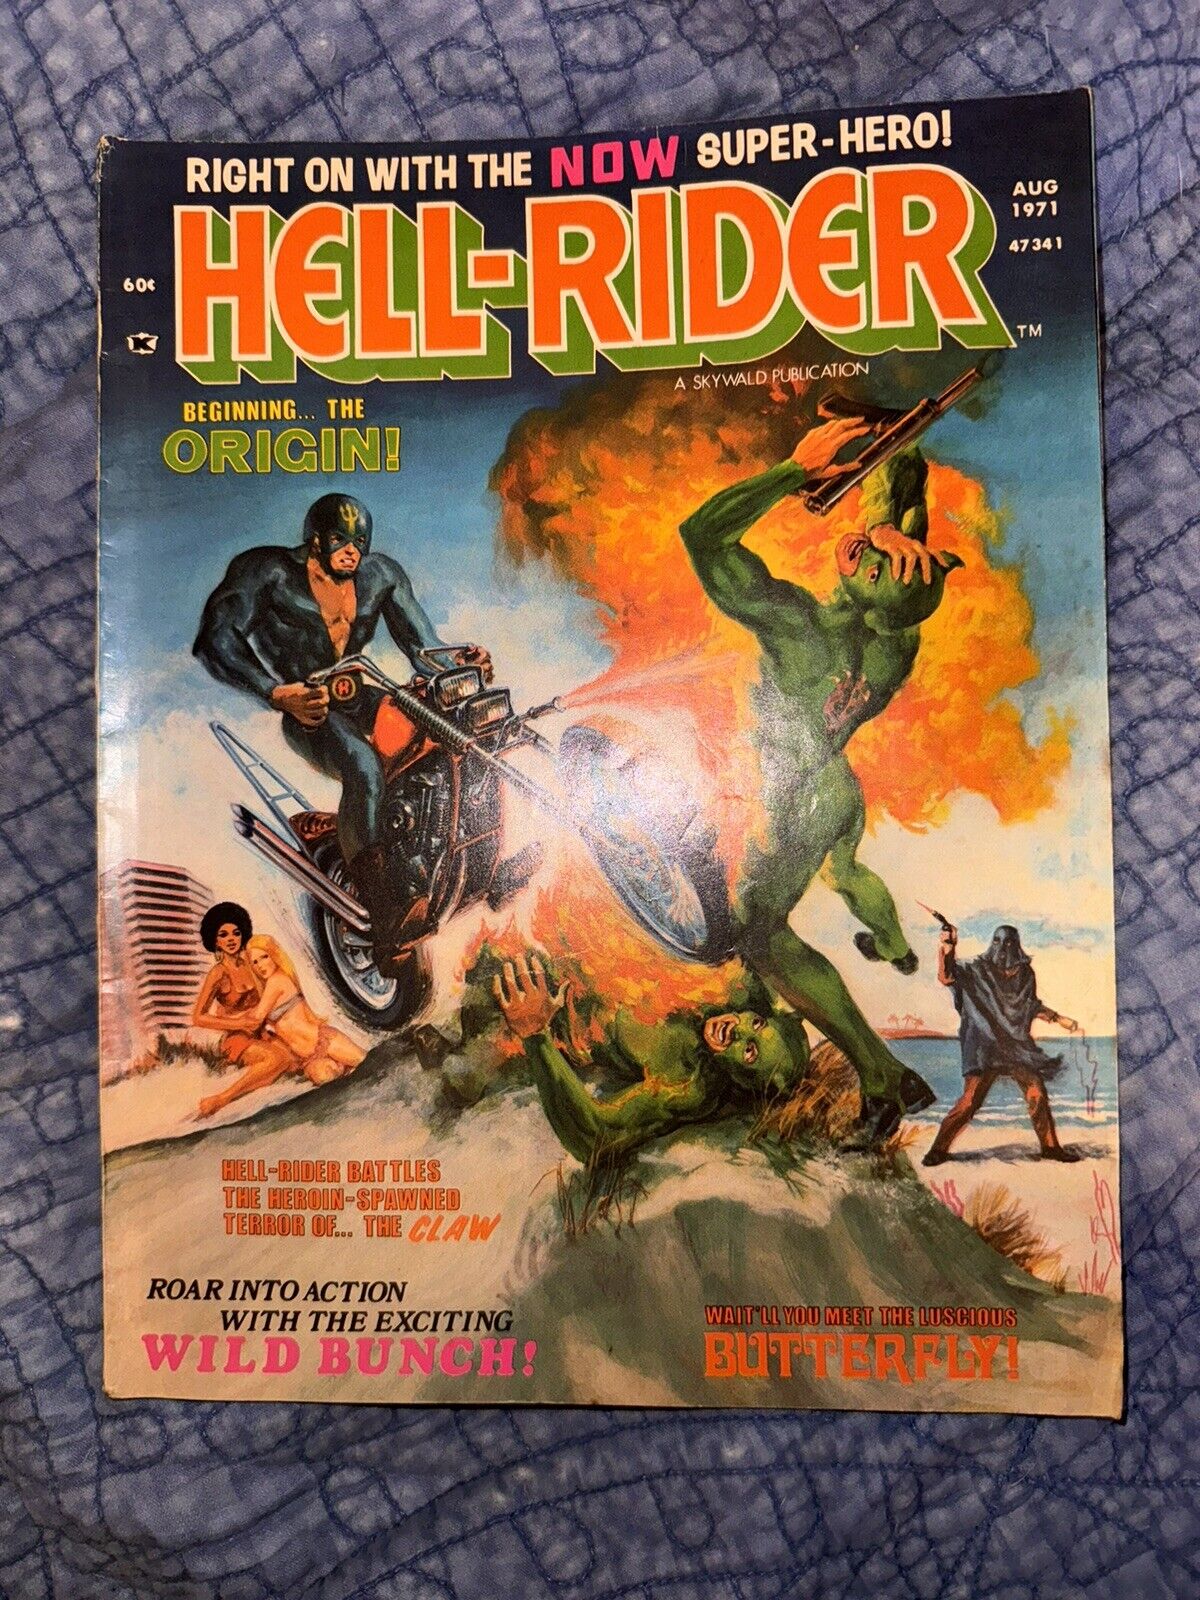 Hell Rider #1 1971 Very Good